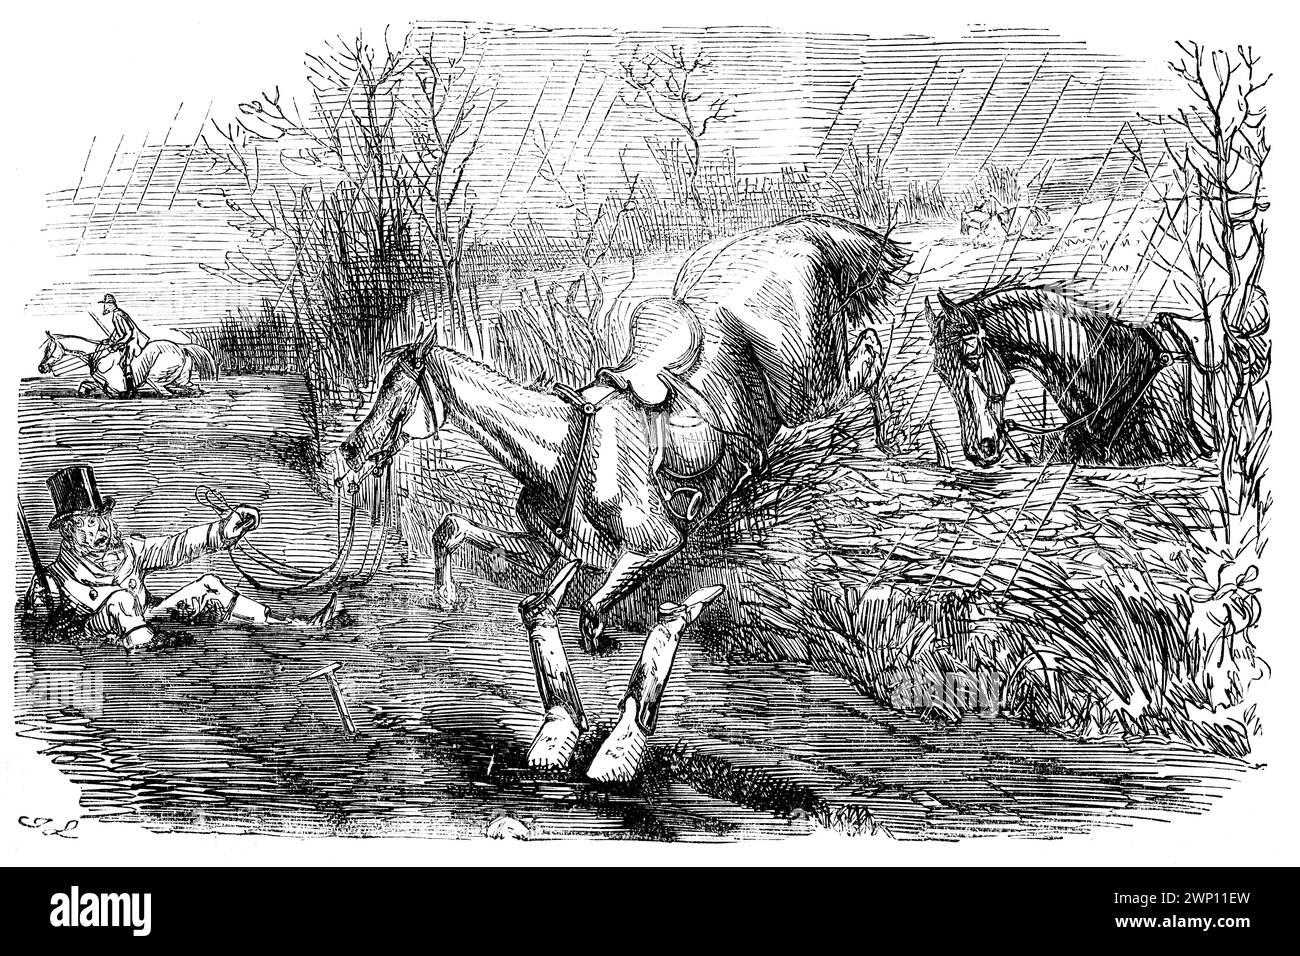 Sporting Intelligence, bande dessinée montrant l'incident de chasse de John Leech de 1852 Punch Magazine. Le pays est terriblement profond, mais la chute est ravissante Banque D'Images